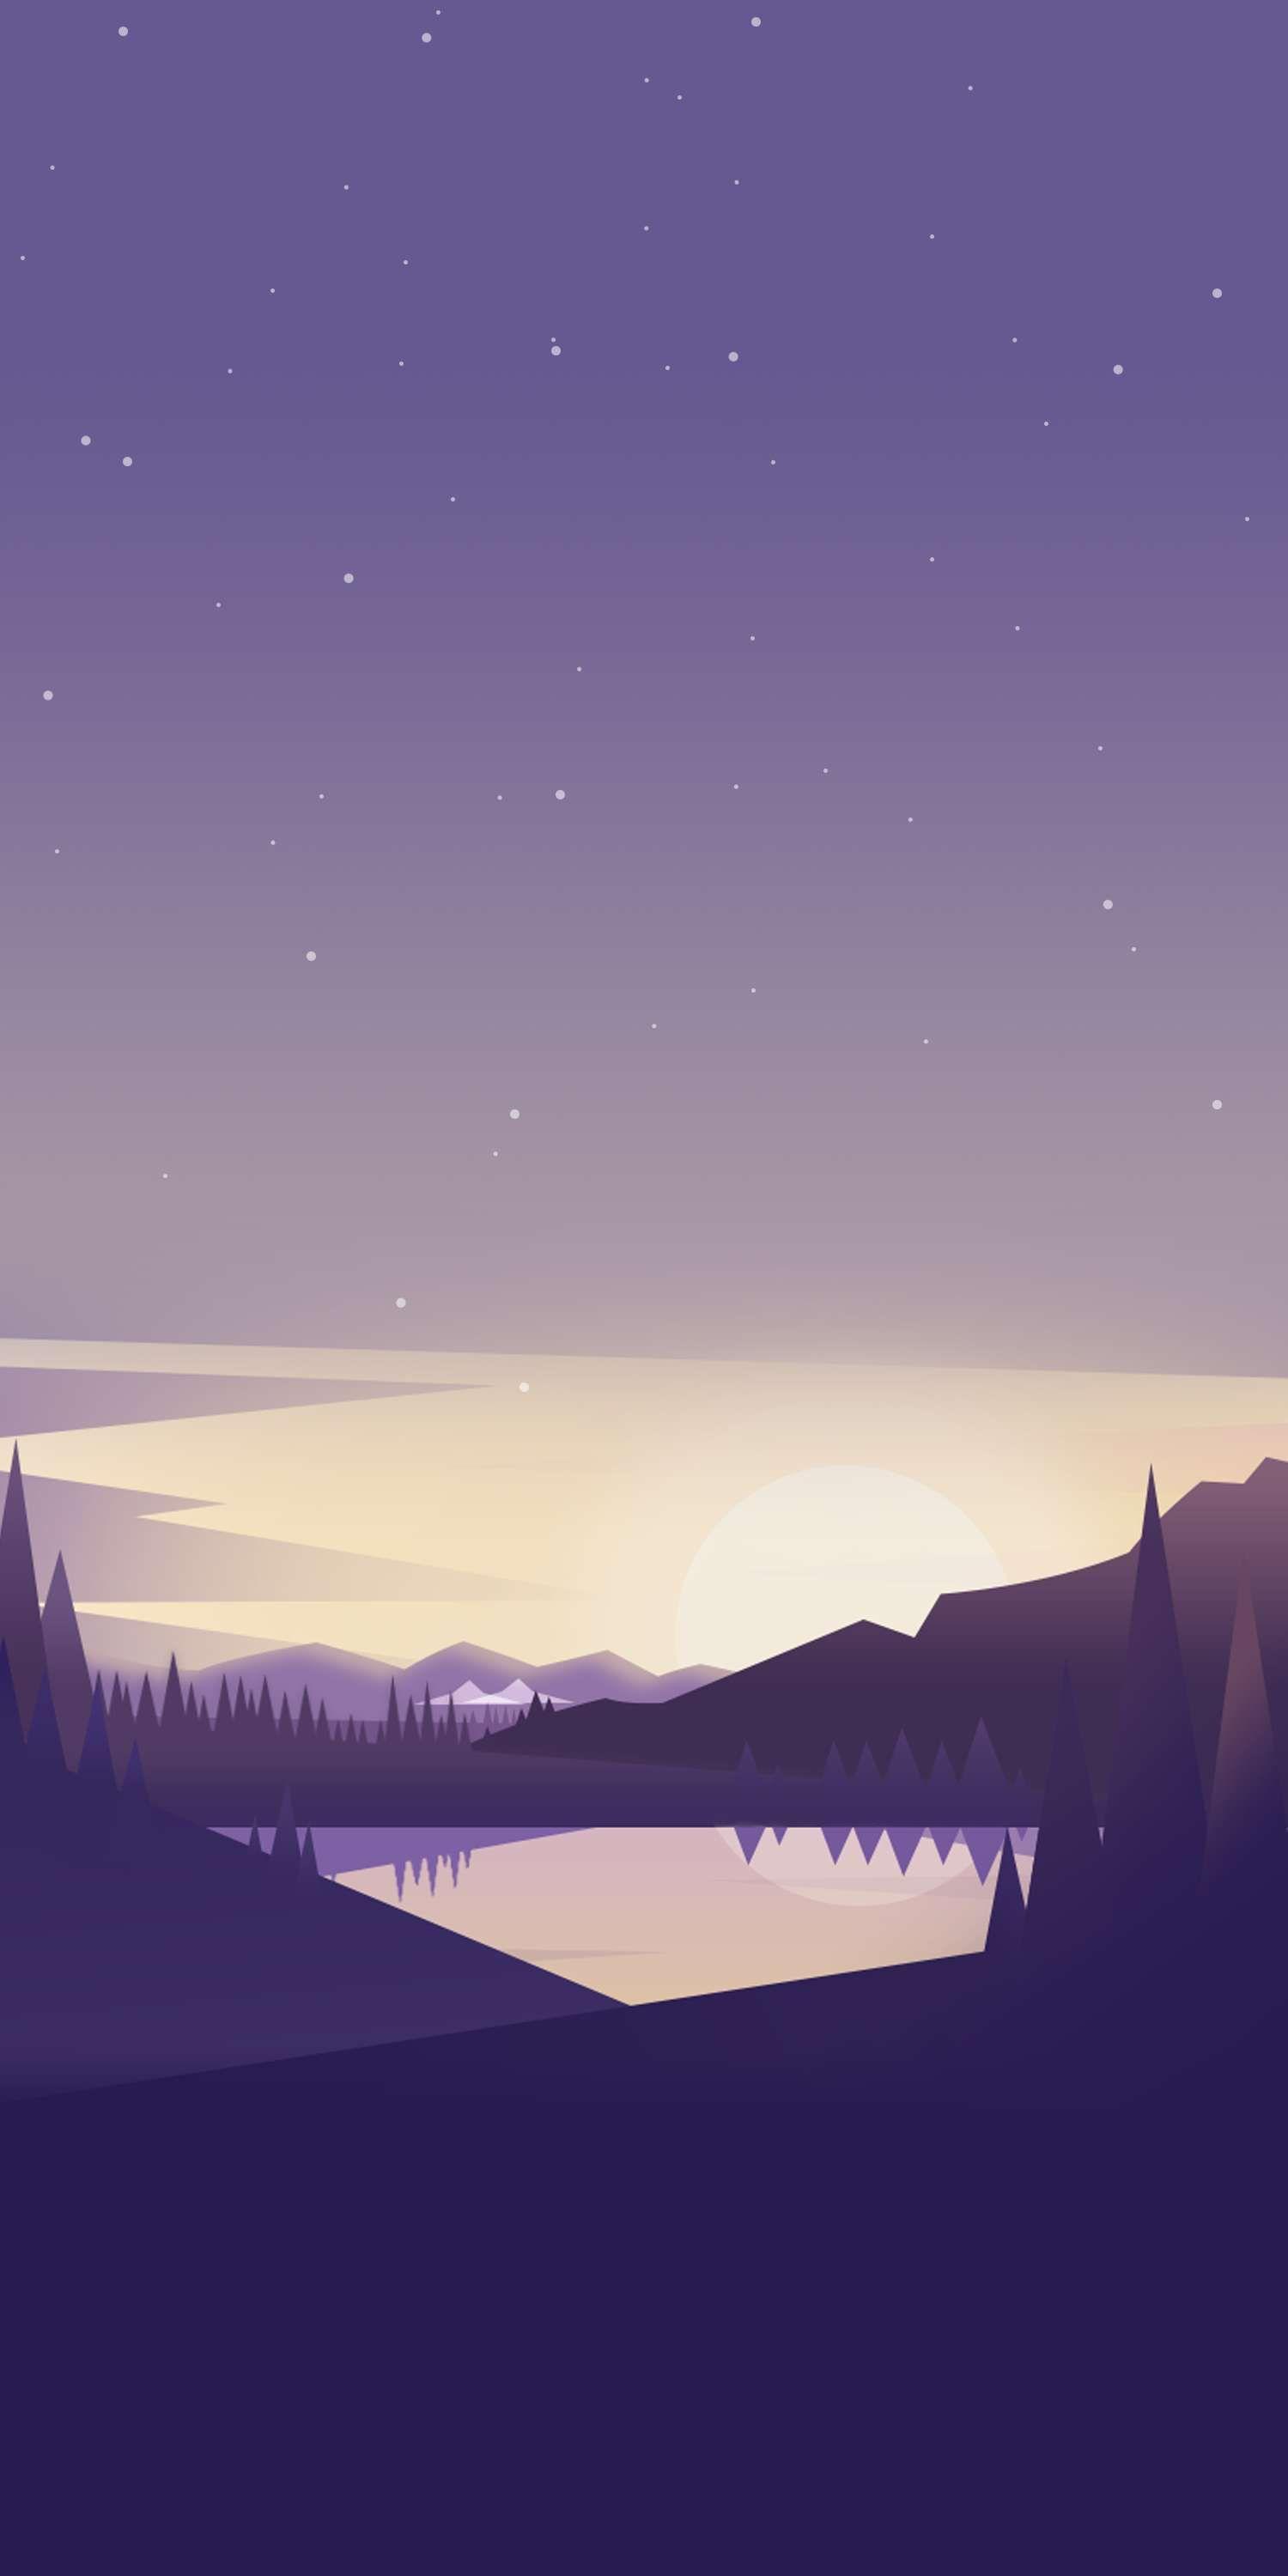 Nature Lake Mountains Minimal iPhone Wallpaper in 2019